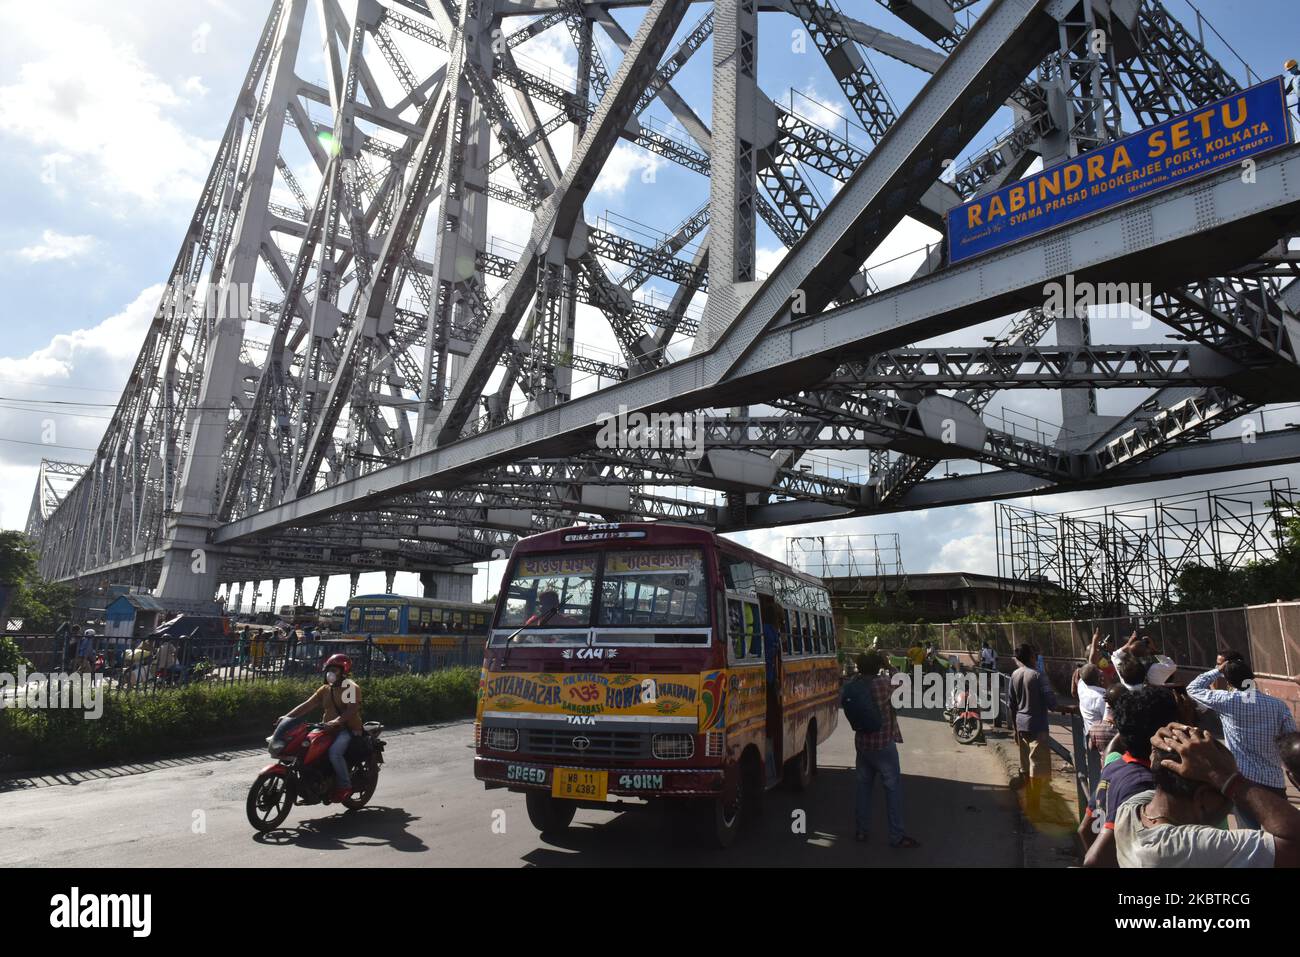 Howrah Bridge oder das Rabindra Setu, das vom Kolkata Port Trust am 17. Juli 2020 offiziell in Dr. SYAMA PRASAD MUKHERJEE Port Trust in Kalkutta, Indien, umbenannt wird. Es ist der älteste operative Hafen in Indien und wurde von der British East India Company gebaut. Der Kolkata Port Trust wurde anlässlich der 150-jährigen Tätigkeit des Kolkata Port durch Premierminister Sri in Dr. Shyama Prasad Mukherjee Port umbenannt. Narendra Modi während seines Besuchs in Kalkata, um am 12.. Januar 2020 am Port Trust-Programm teilzunehmen. (Foto von Sukhomoy Sen/NurPhoto) Stockfoto